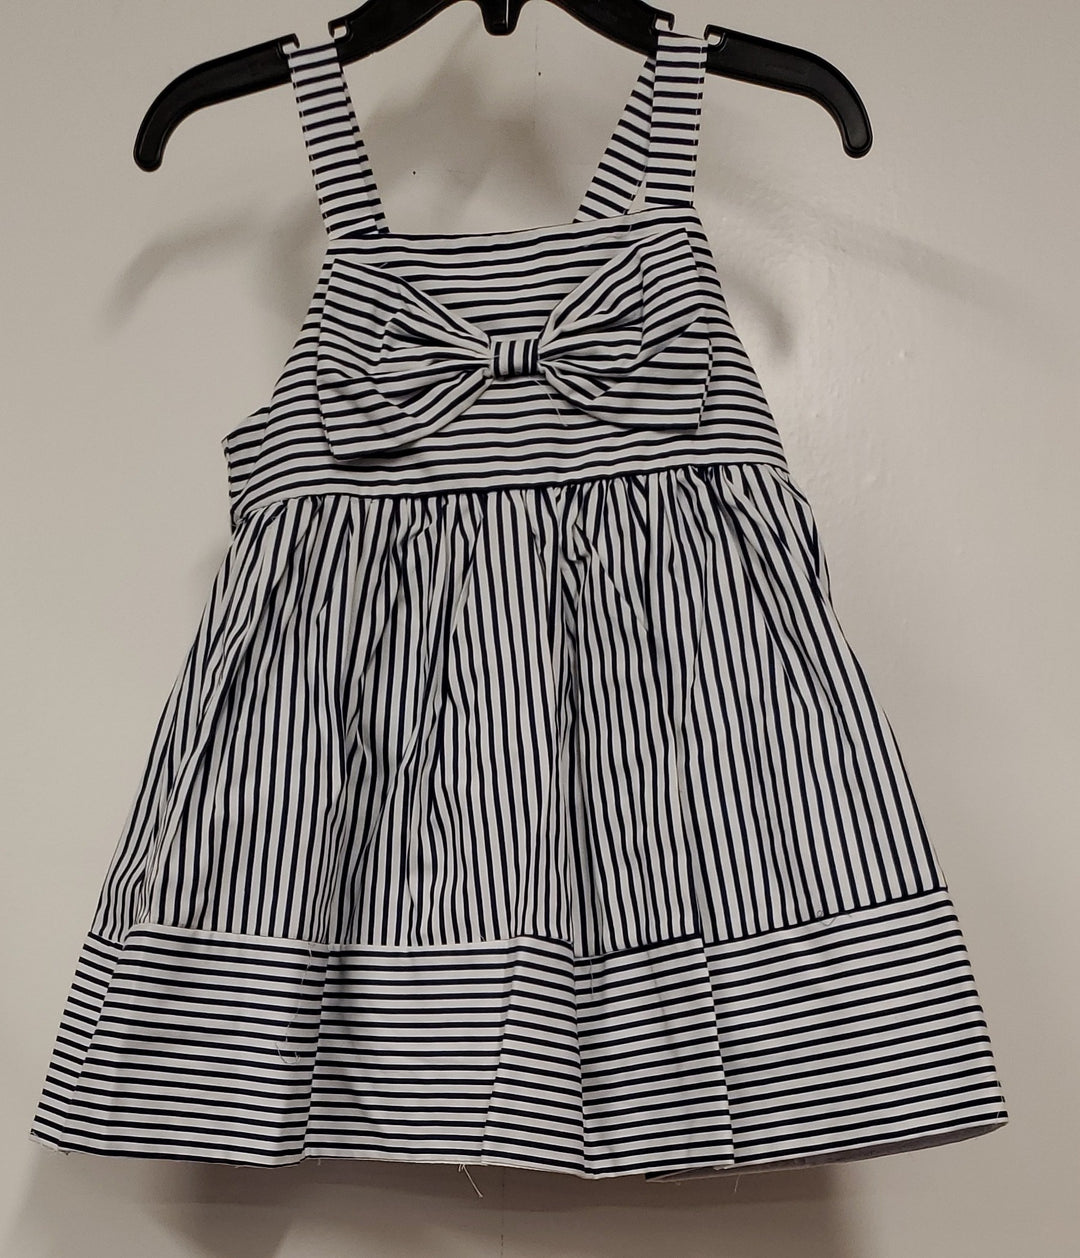 Toddler Black/White Striped Sleeveless Dress